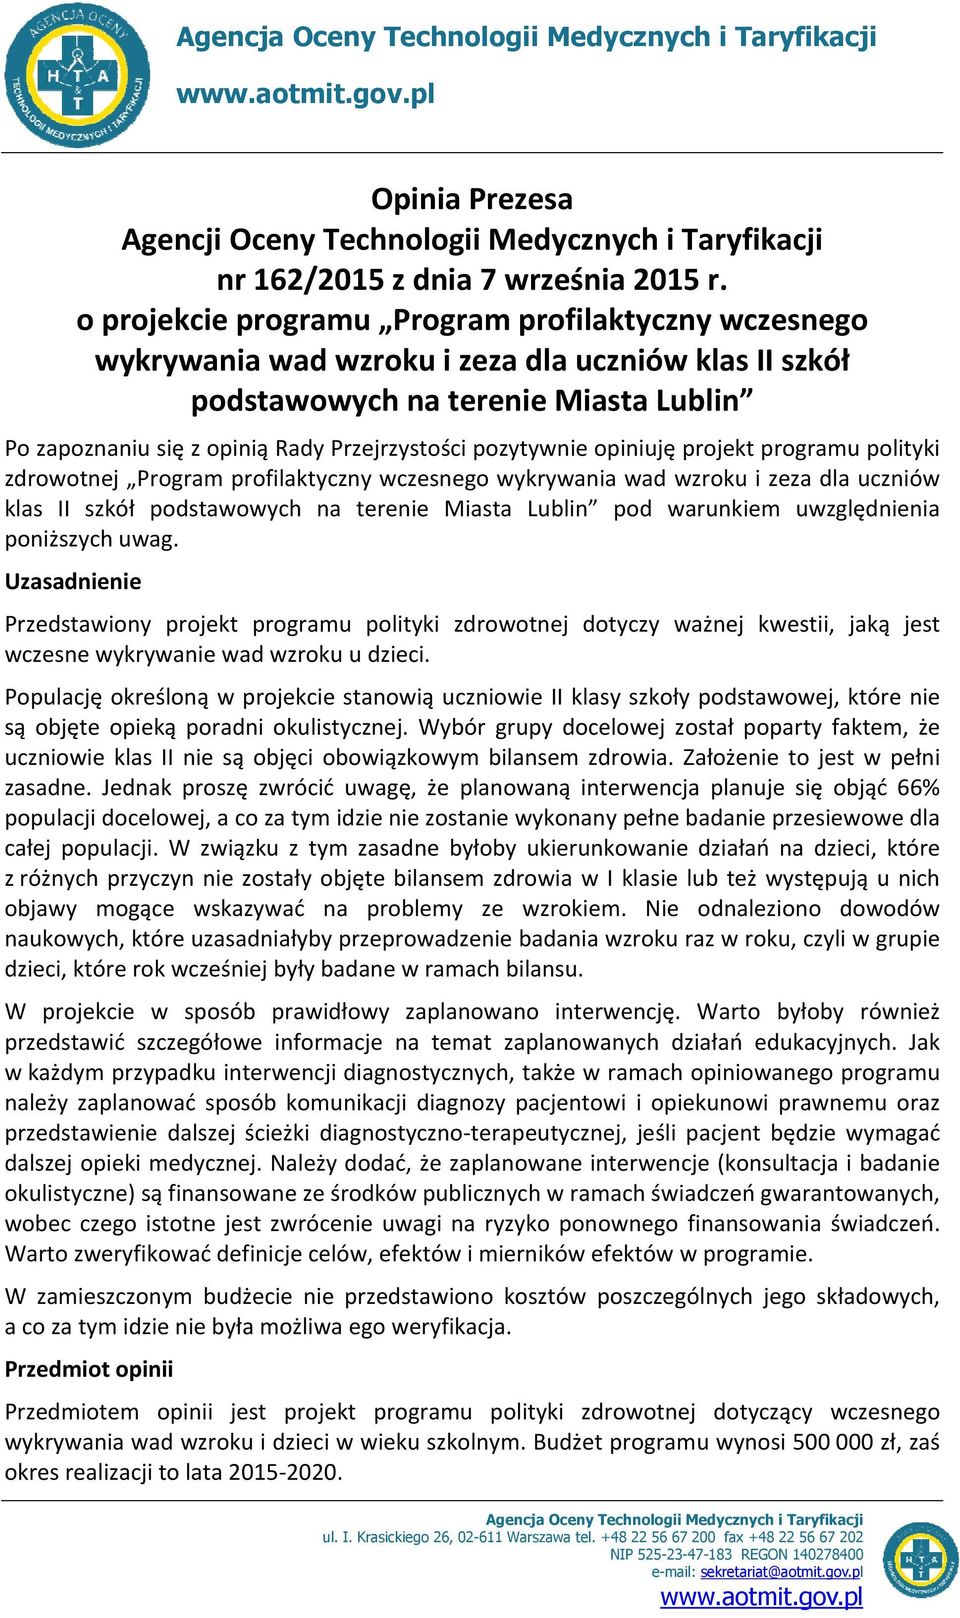 pozytywnie opiniuję projekt programu polityki zdrowotnej Program profilaktyczny wczesnego wykrywania wad wzroku i zeza dla uczniów klas II szkół podstawowych na terenie Miasta Lublin pod warunkiem